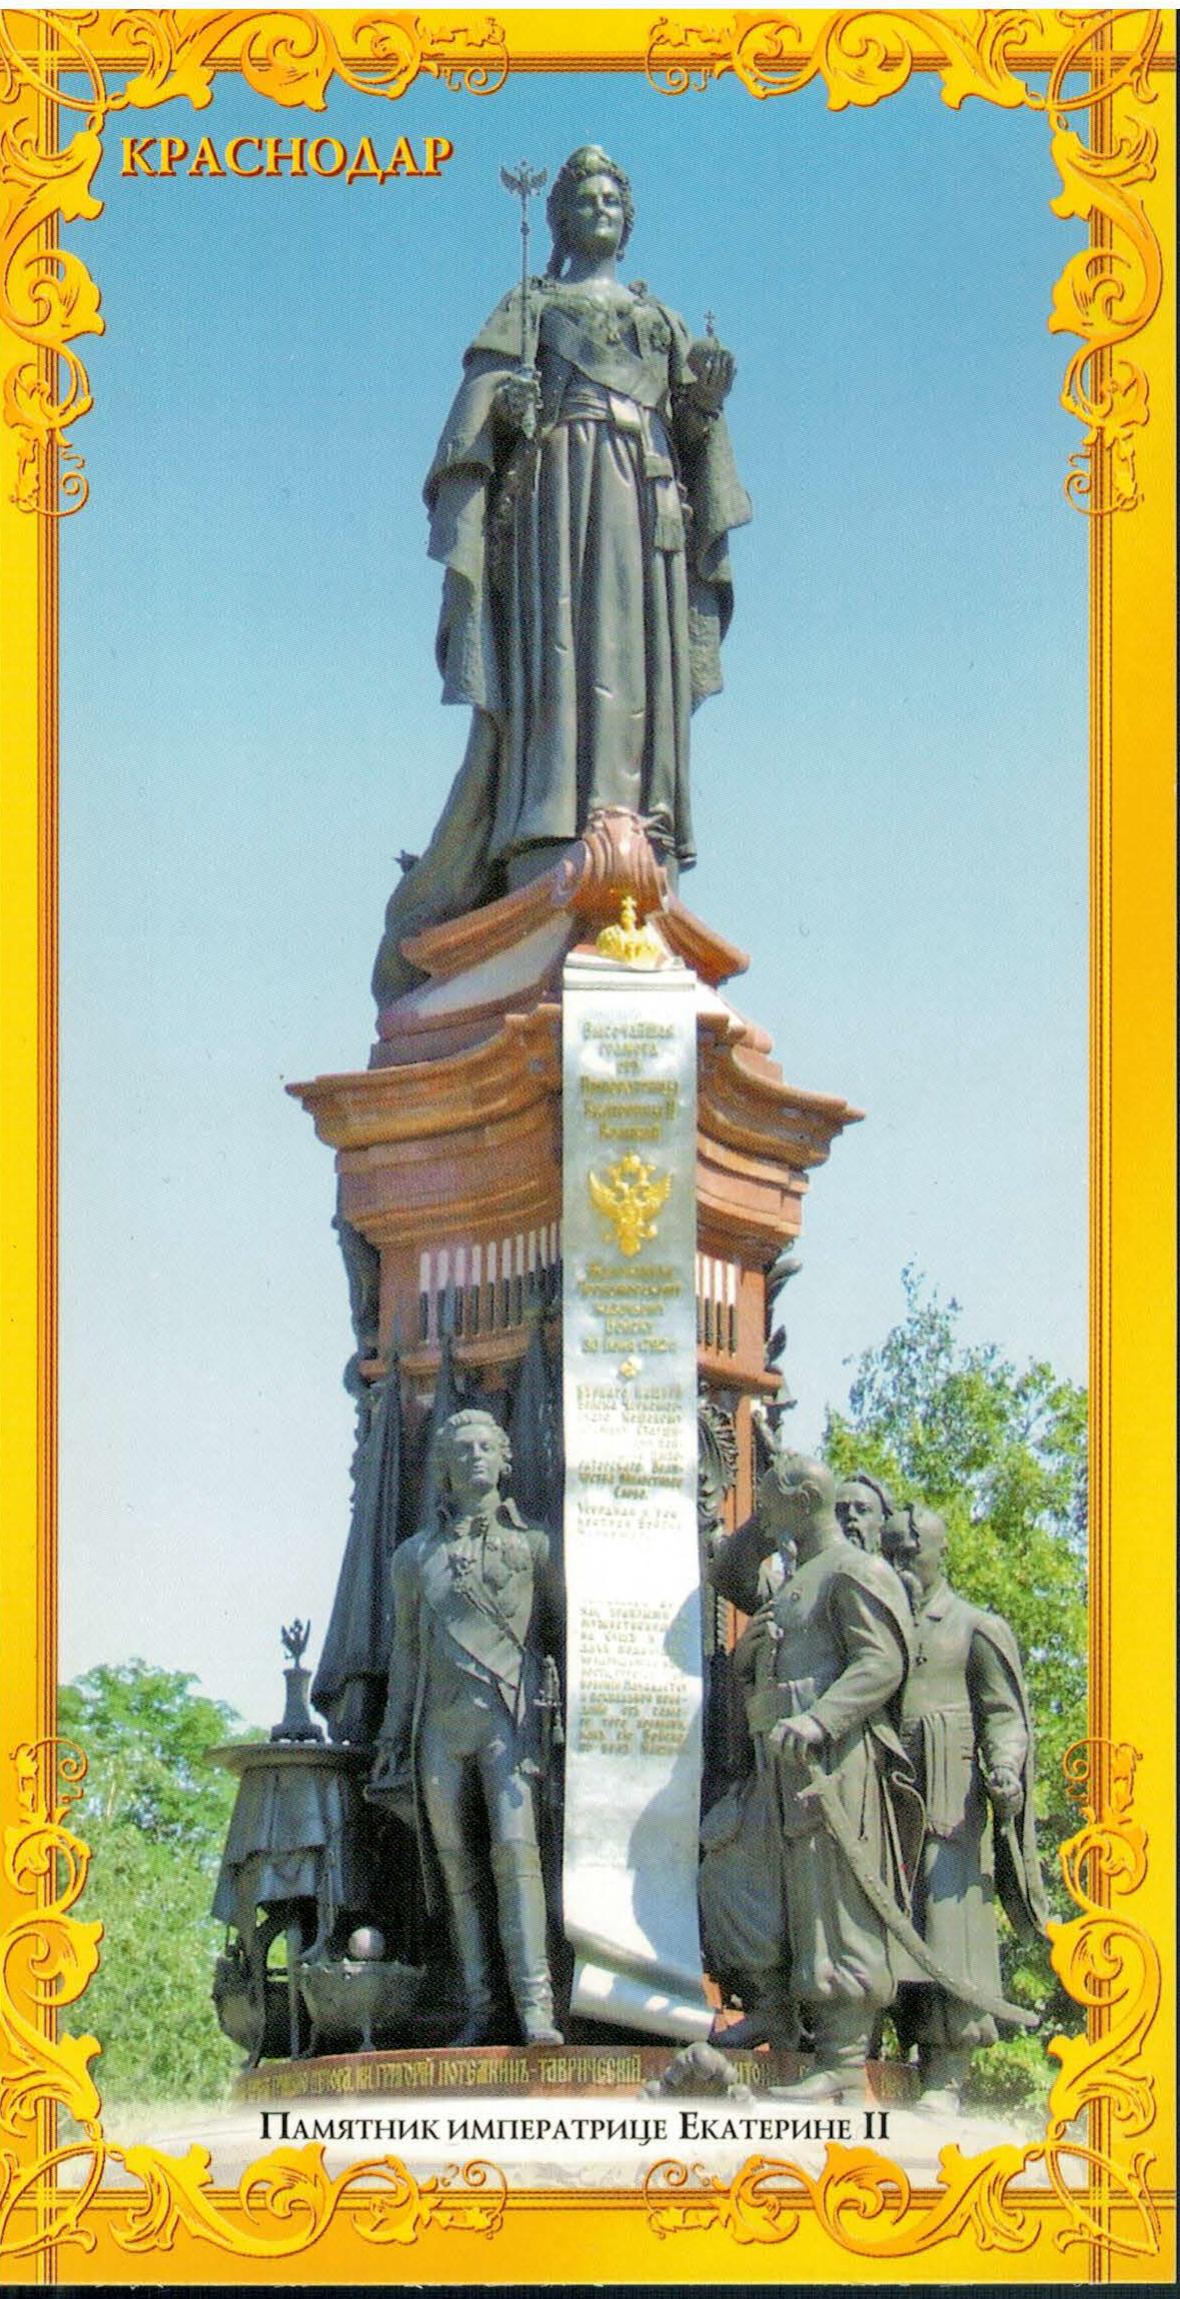 Monument to Catherine II in Krasnodar